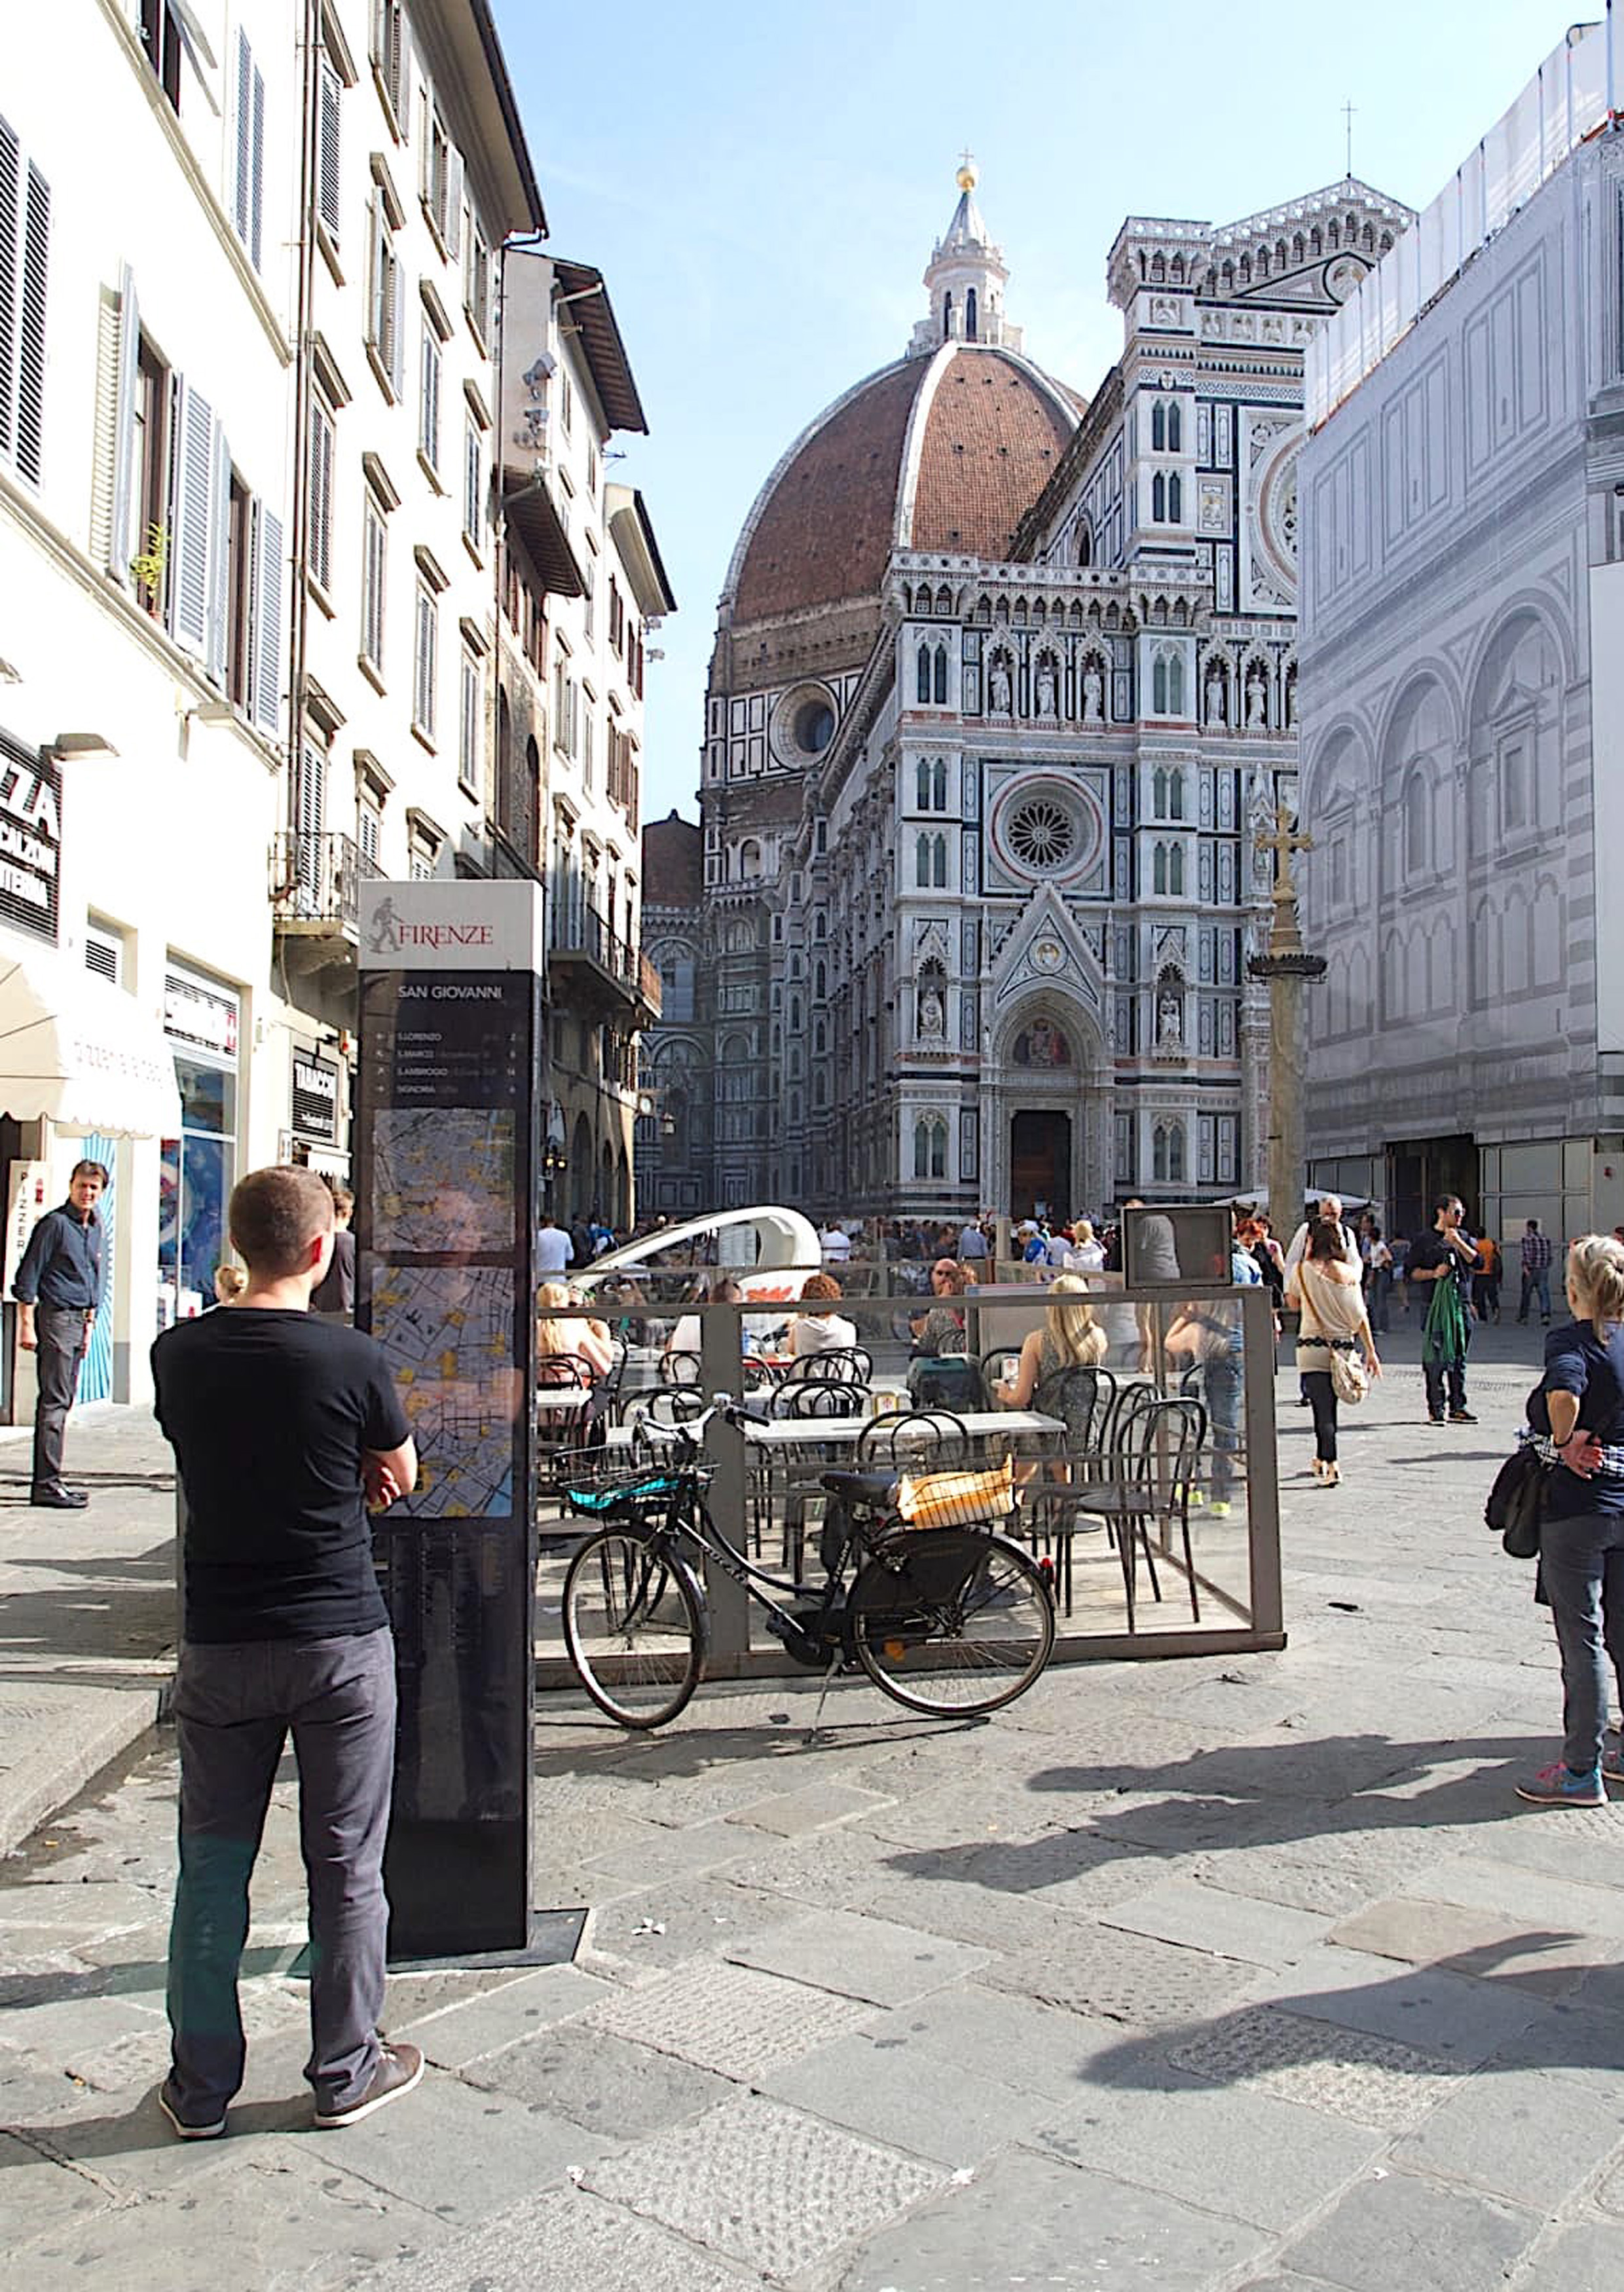 “Camminare a Firenze”